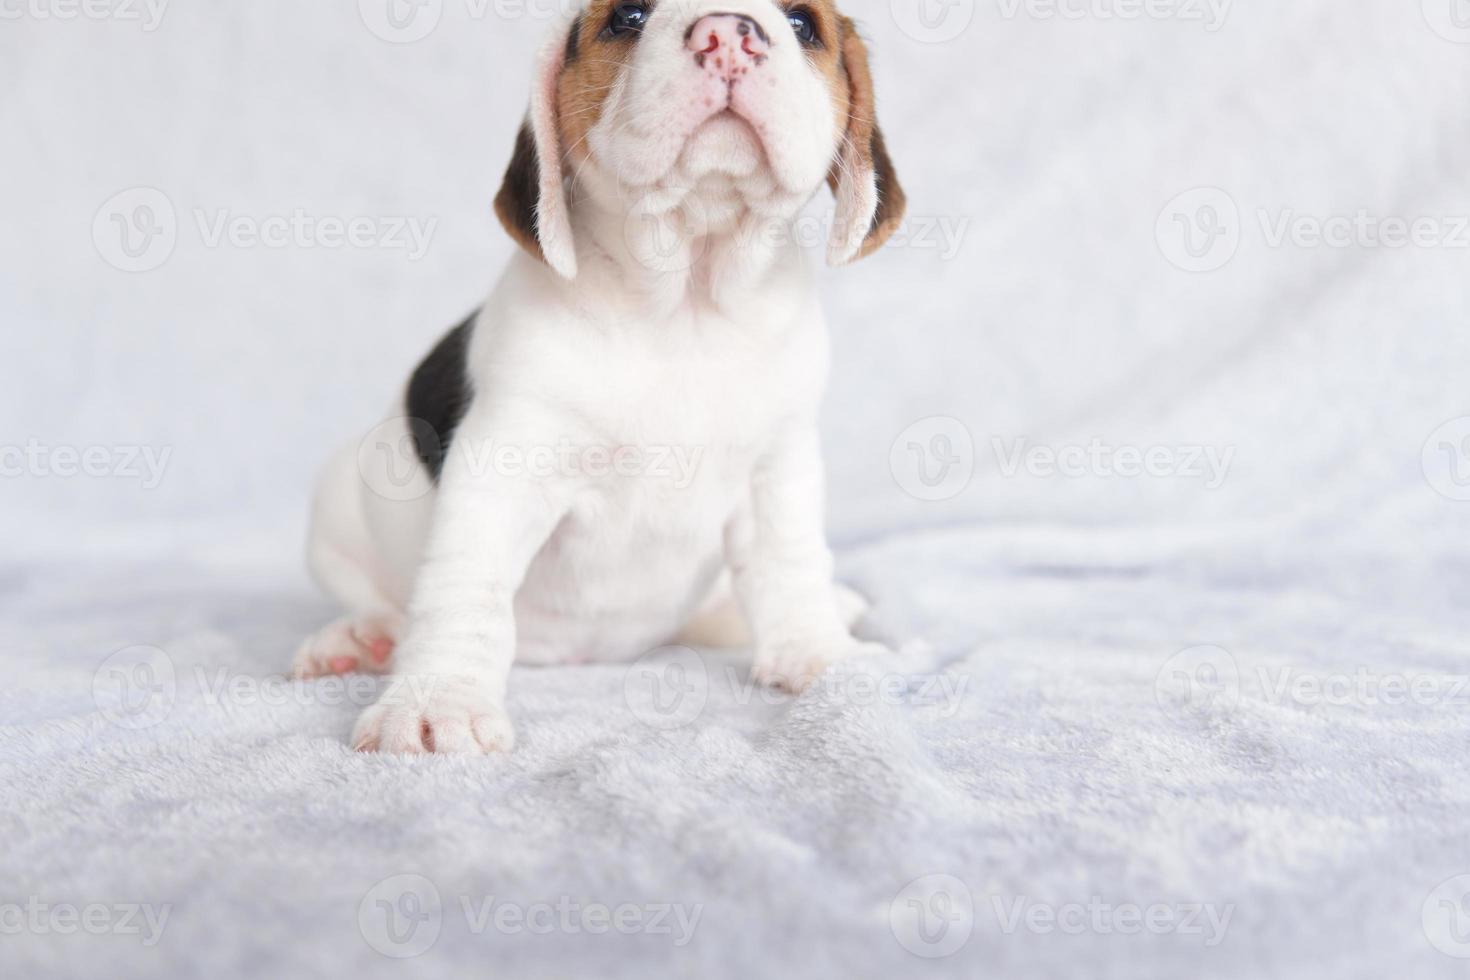 Das allgemeine Erscheinungsbild des Beagle ähnelt einem Miniatur-Fuchshund. Der Beagle wurde hauptsächlich für die Hasenjagd entwickelt. Besitzen einen großen Geruchssinn und überlegene Tracking-Instinkte. foto